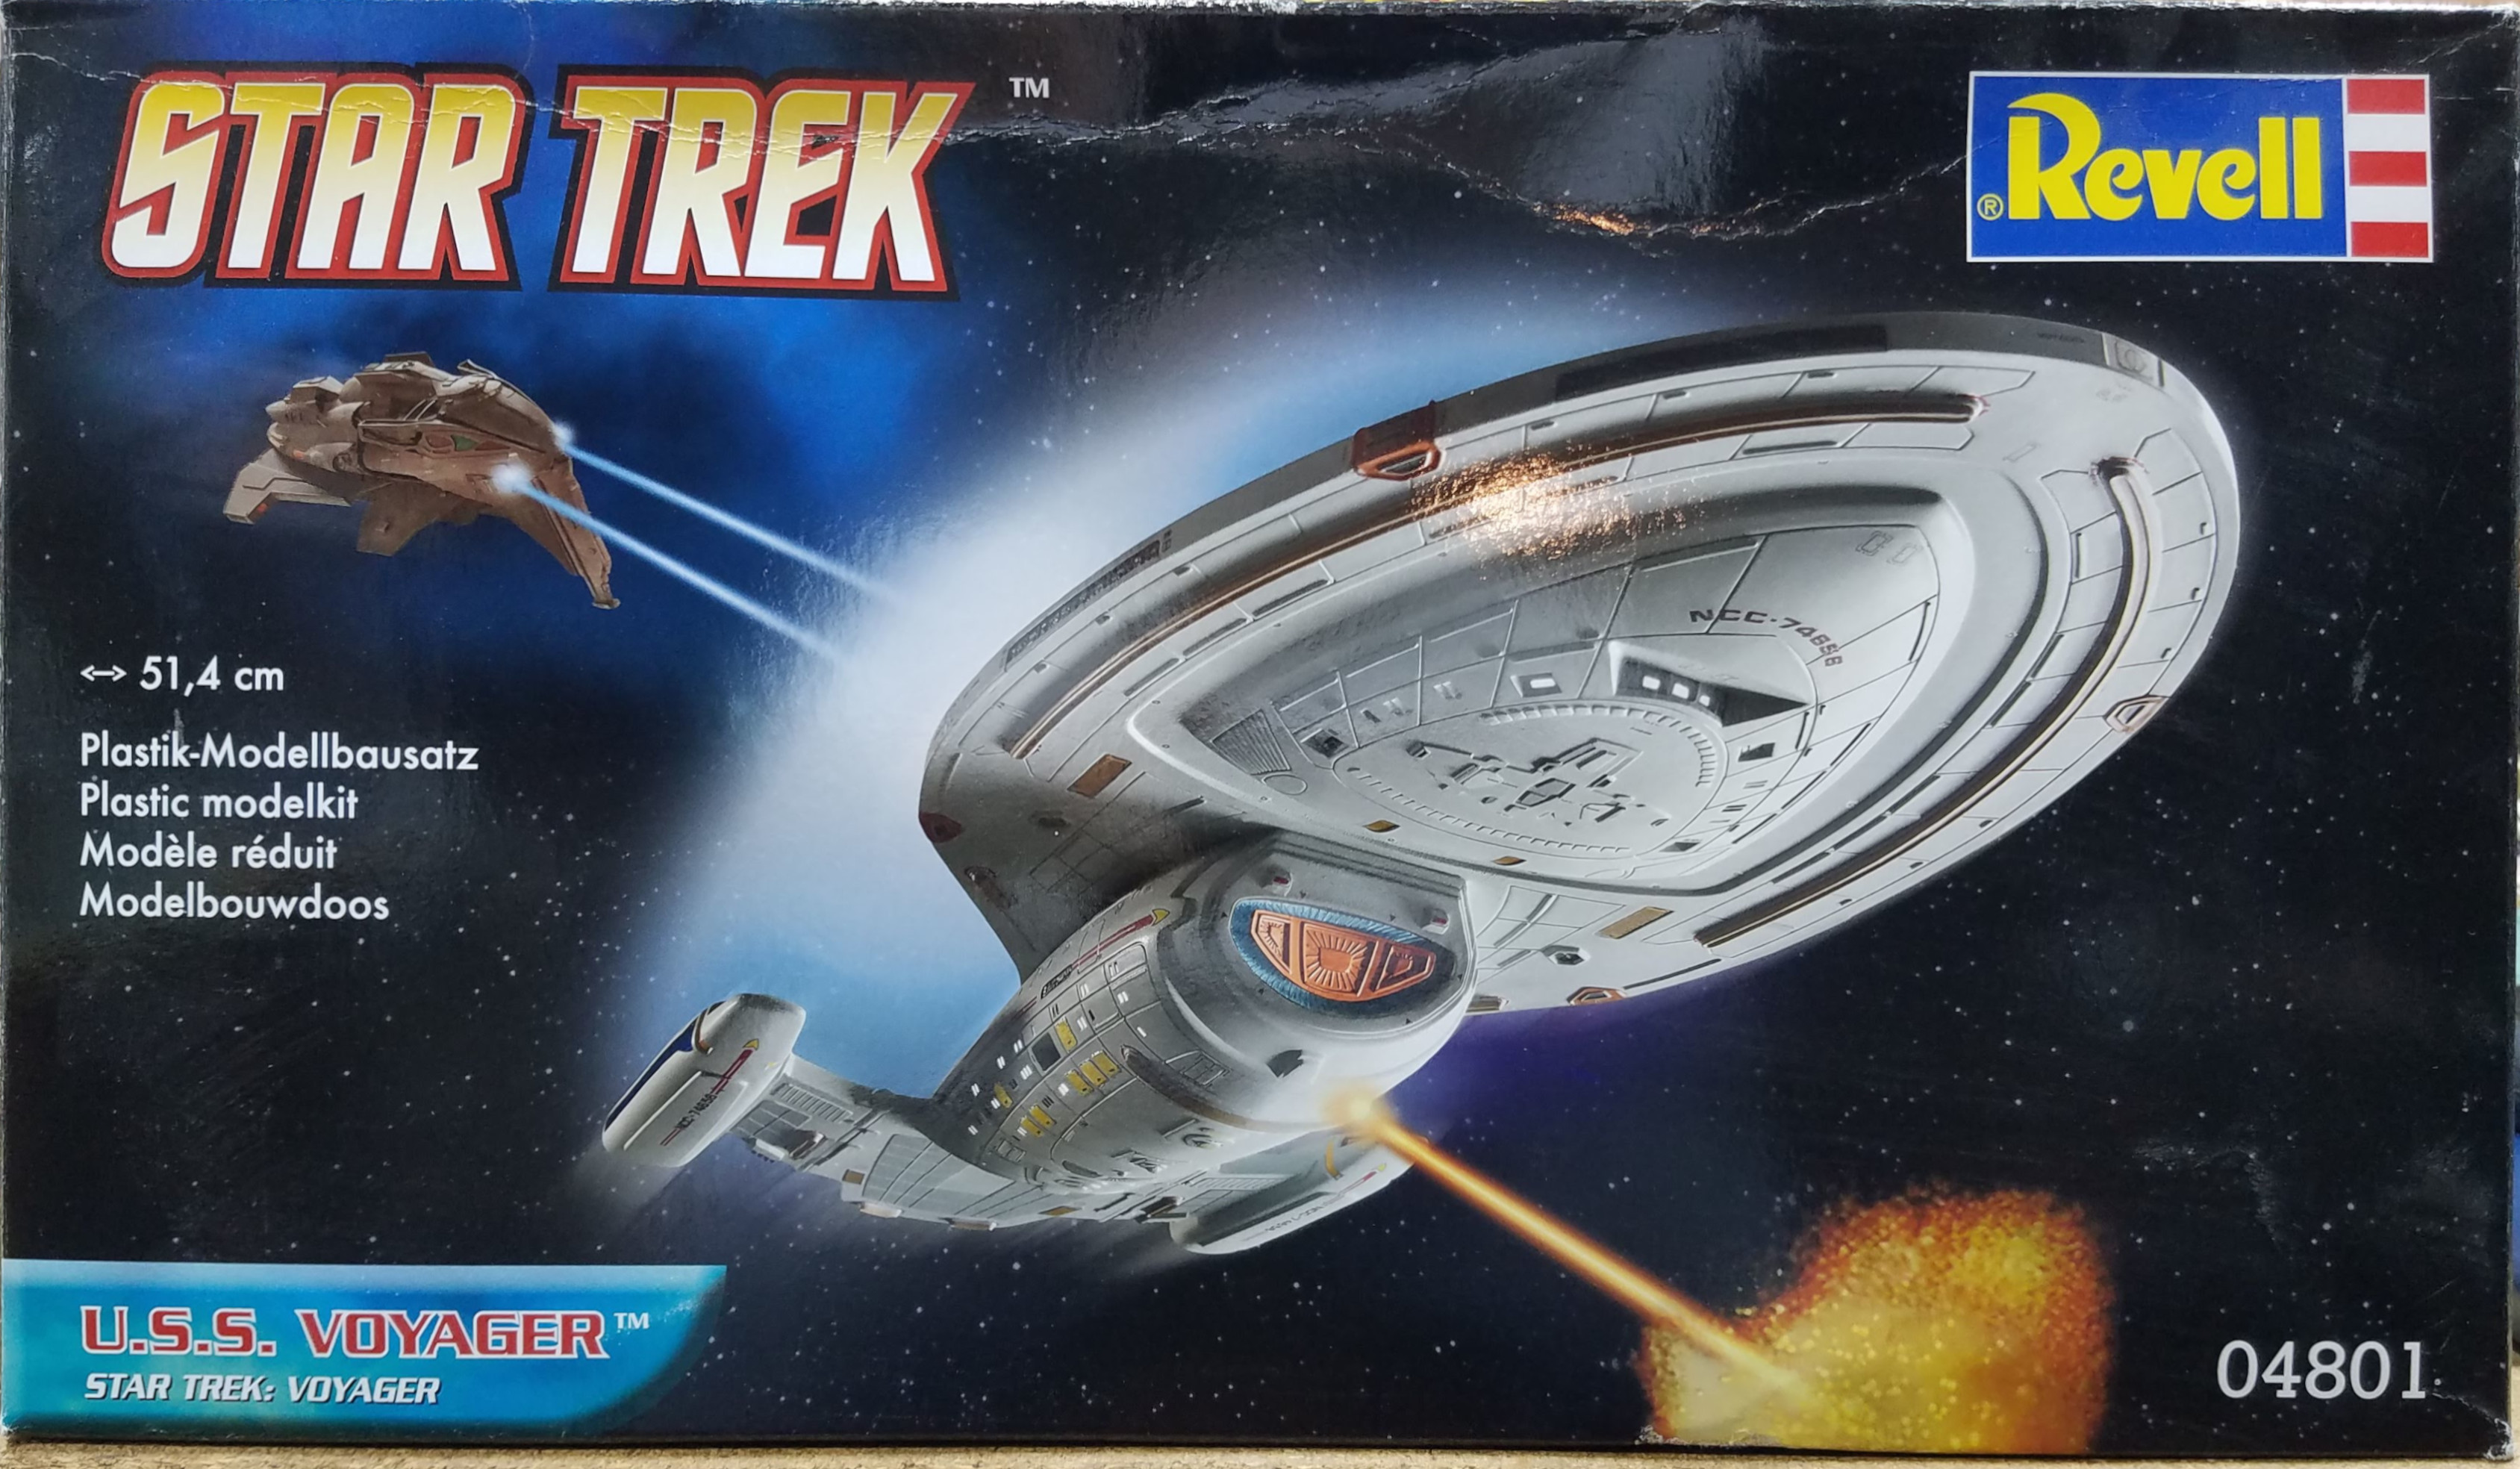 Star Trek Voyager Box Art (Revell)